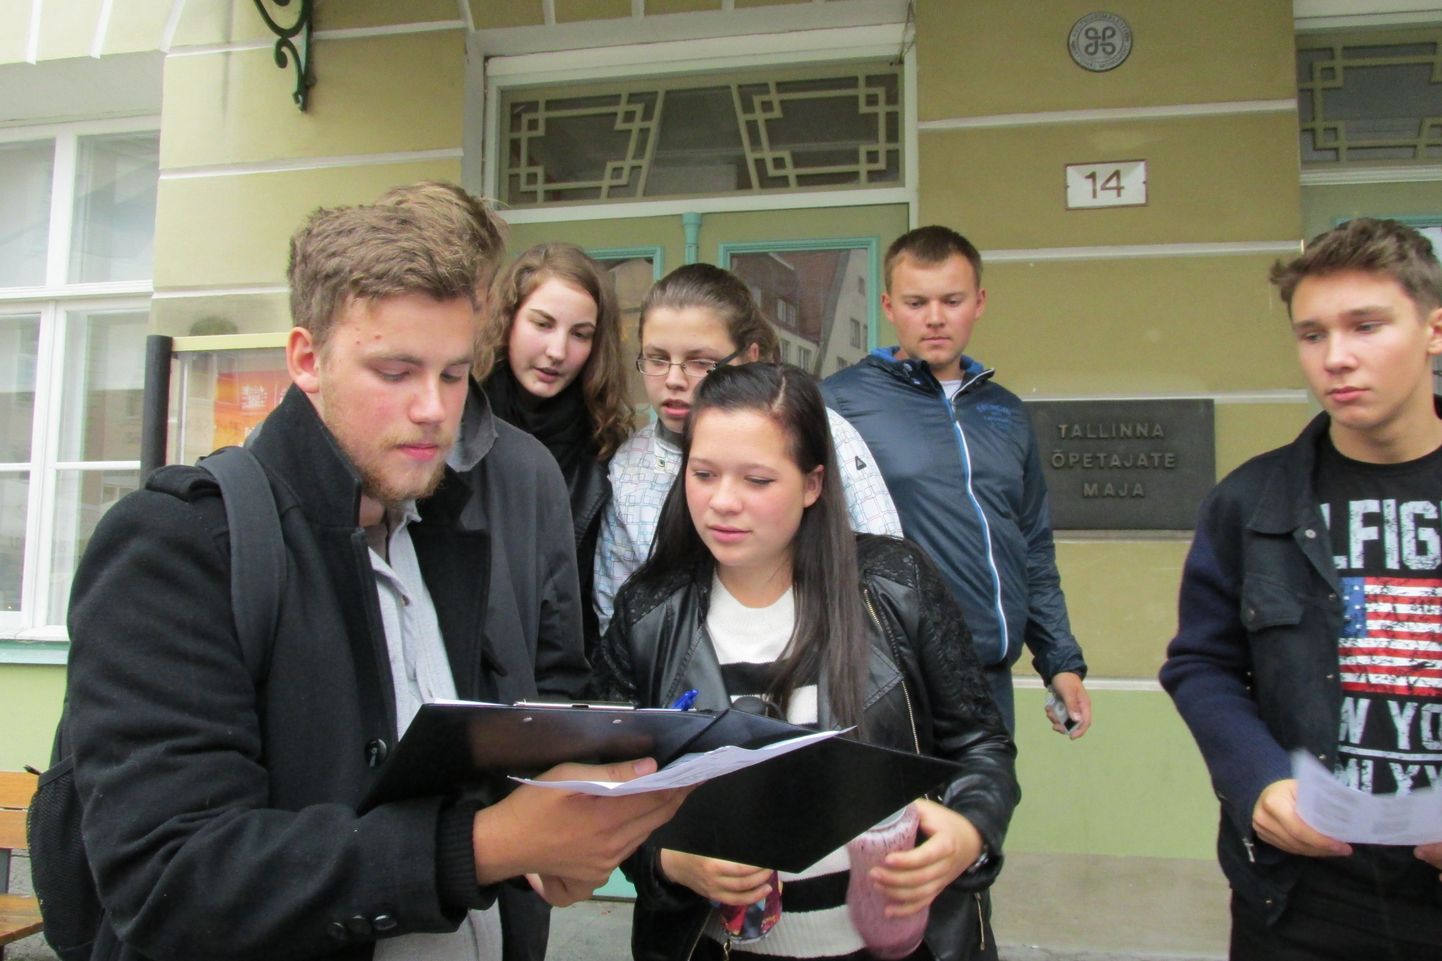 Valga gümnaasiumi ja Tallinna kesklinna vene gümnaasiumi noored vanalinnas orienteerumisvõistlust alustamas.